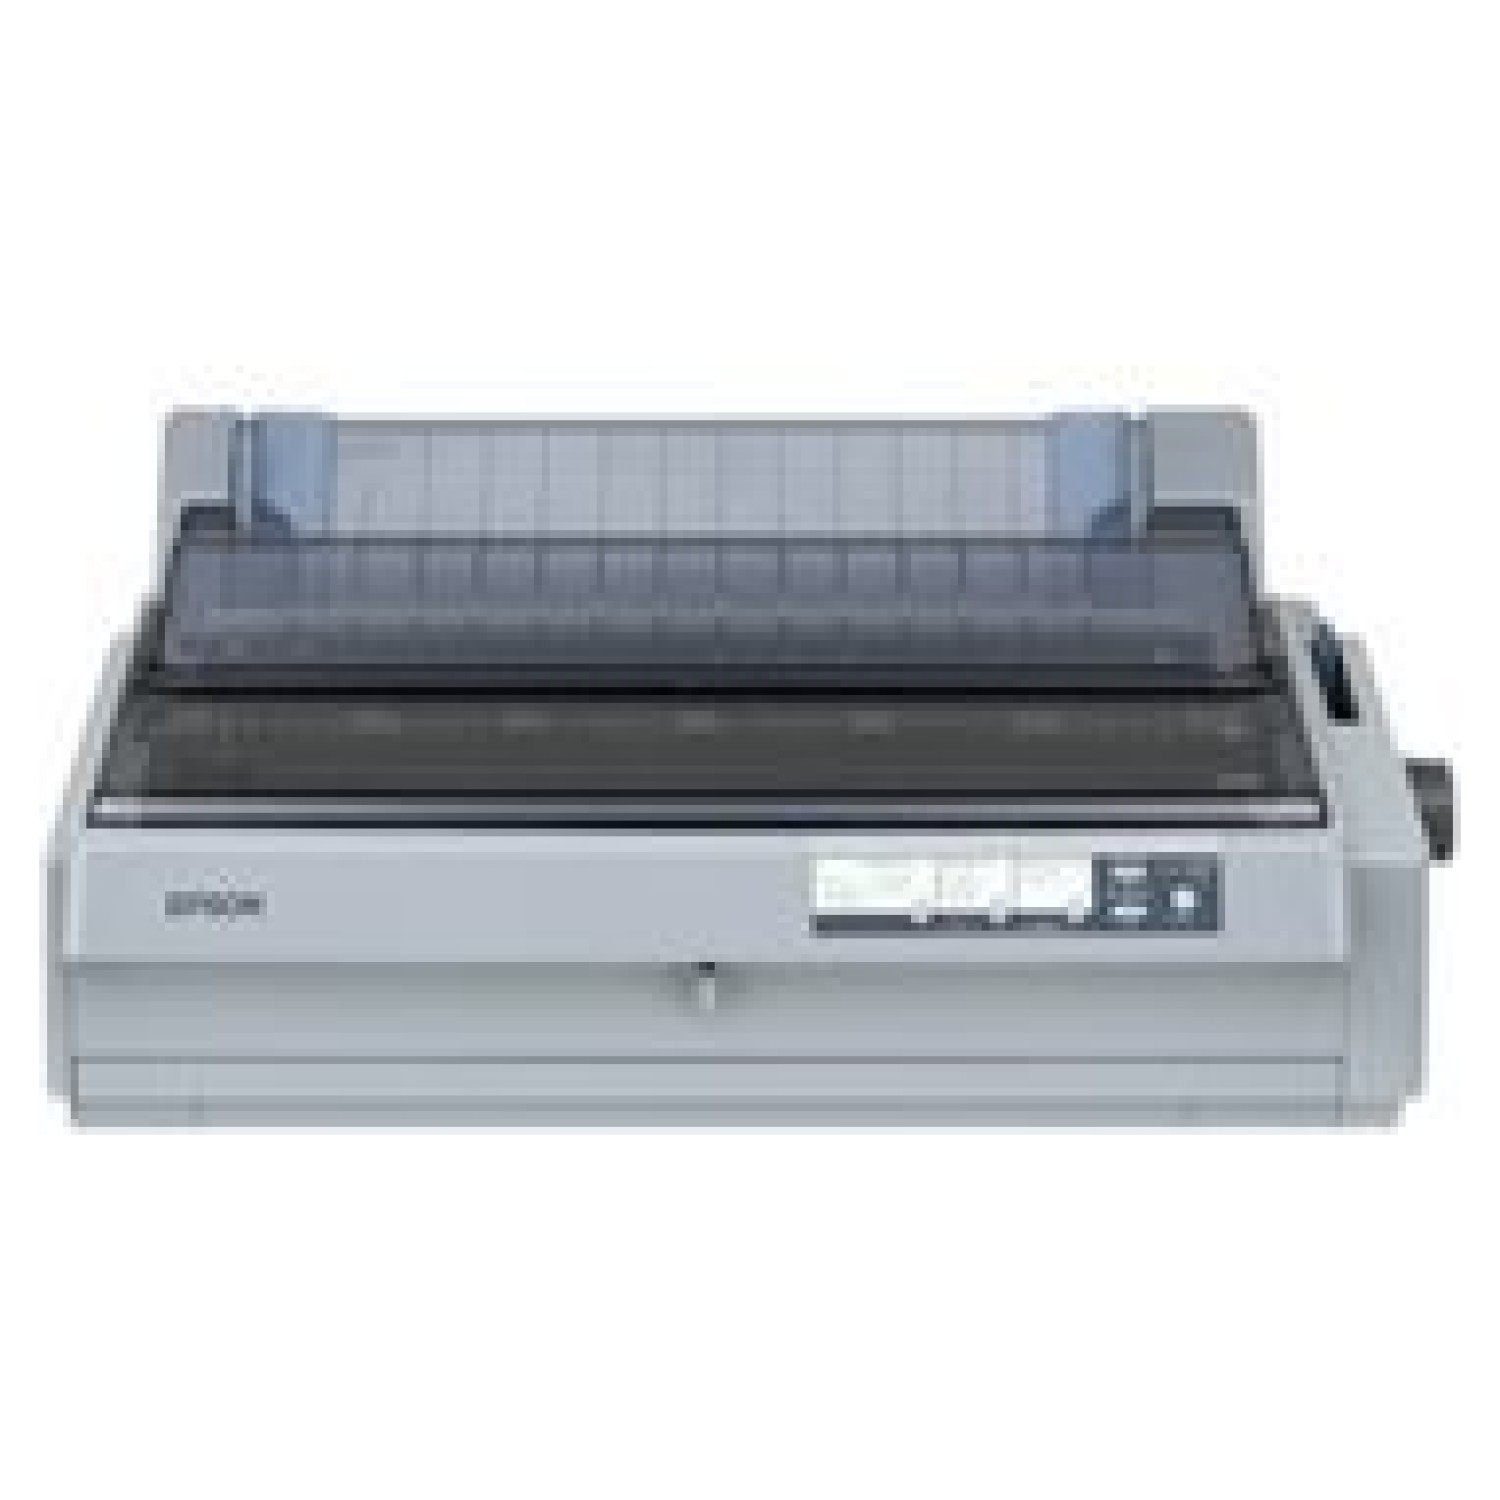 EPSON LQ-2190 dot matrix printer